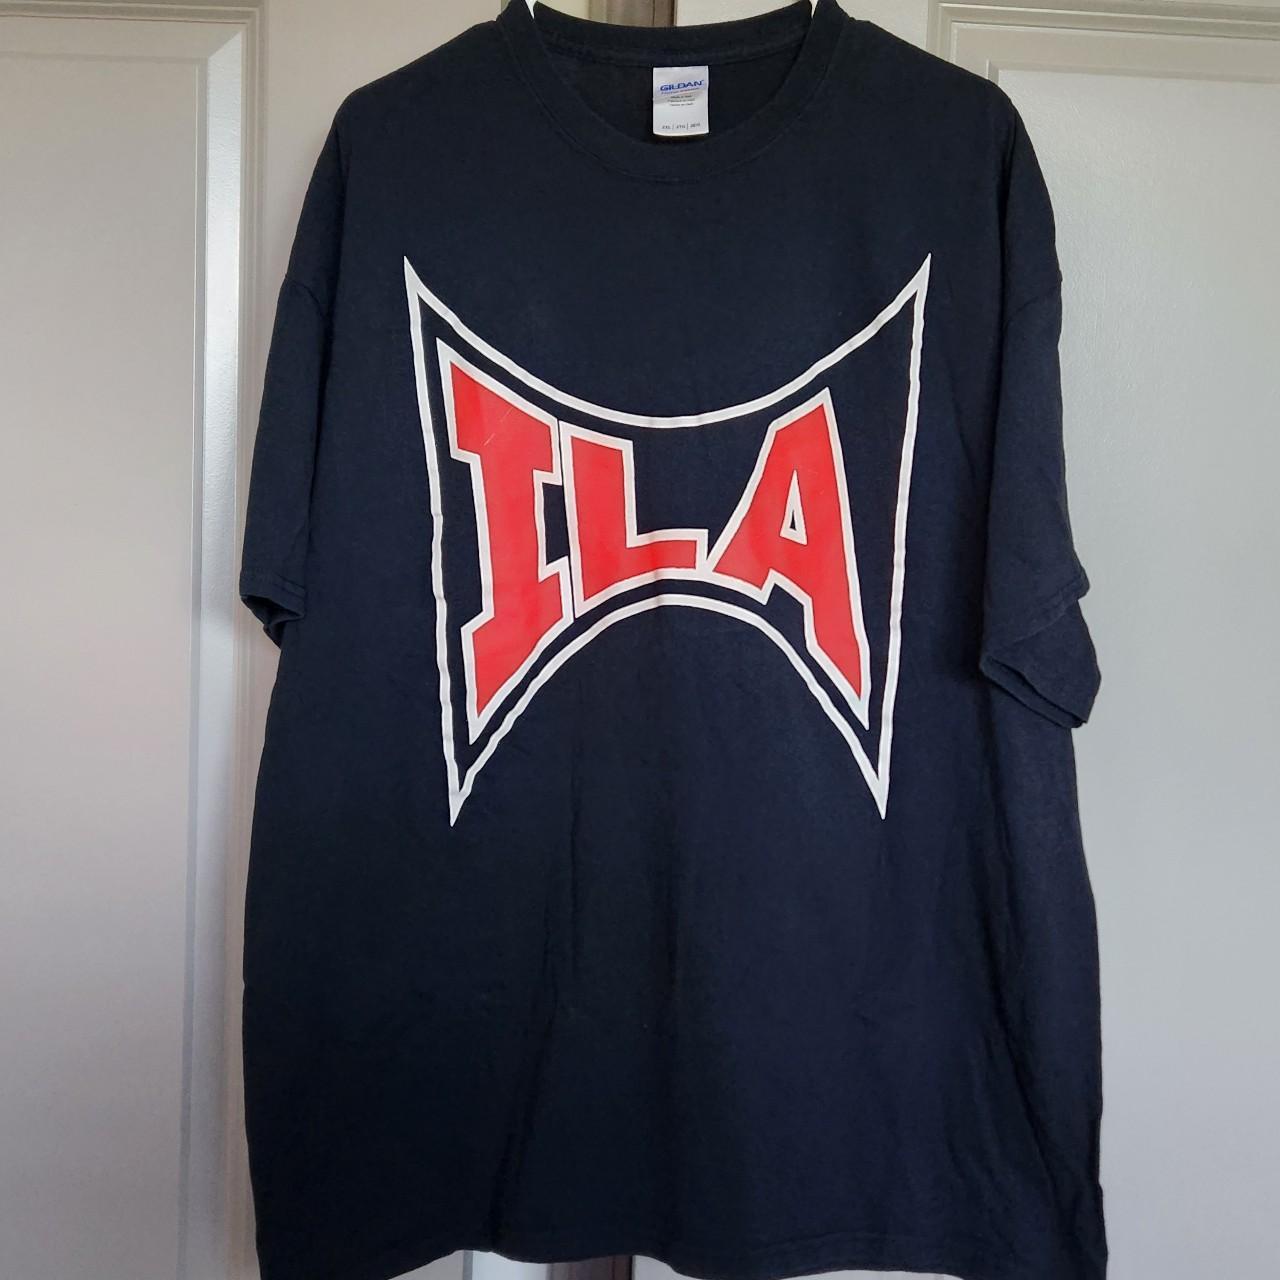 ILA Longshoremen's Union tee shirt size 2XL In... - Depop